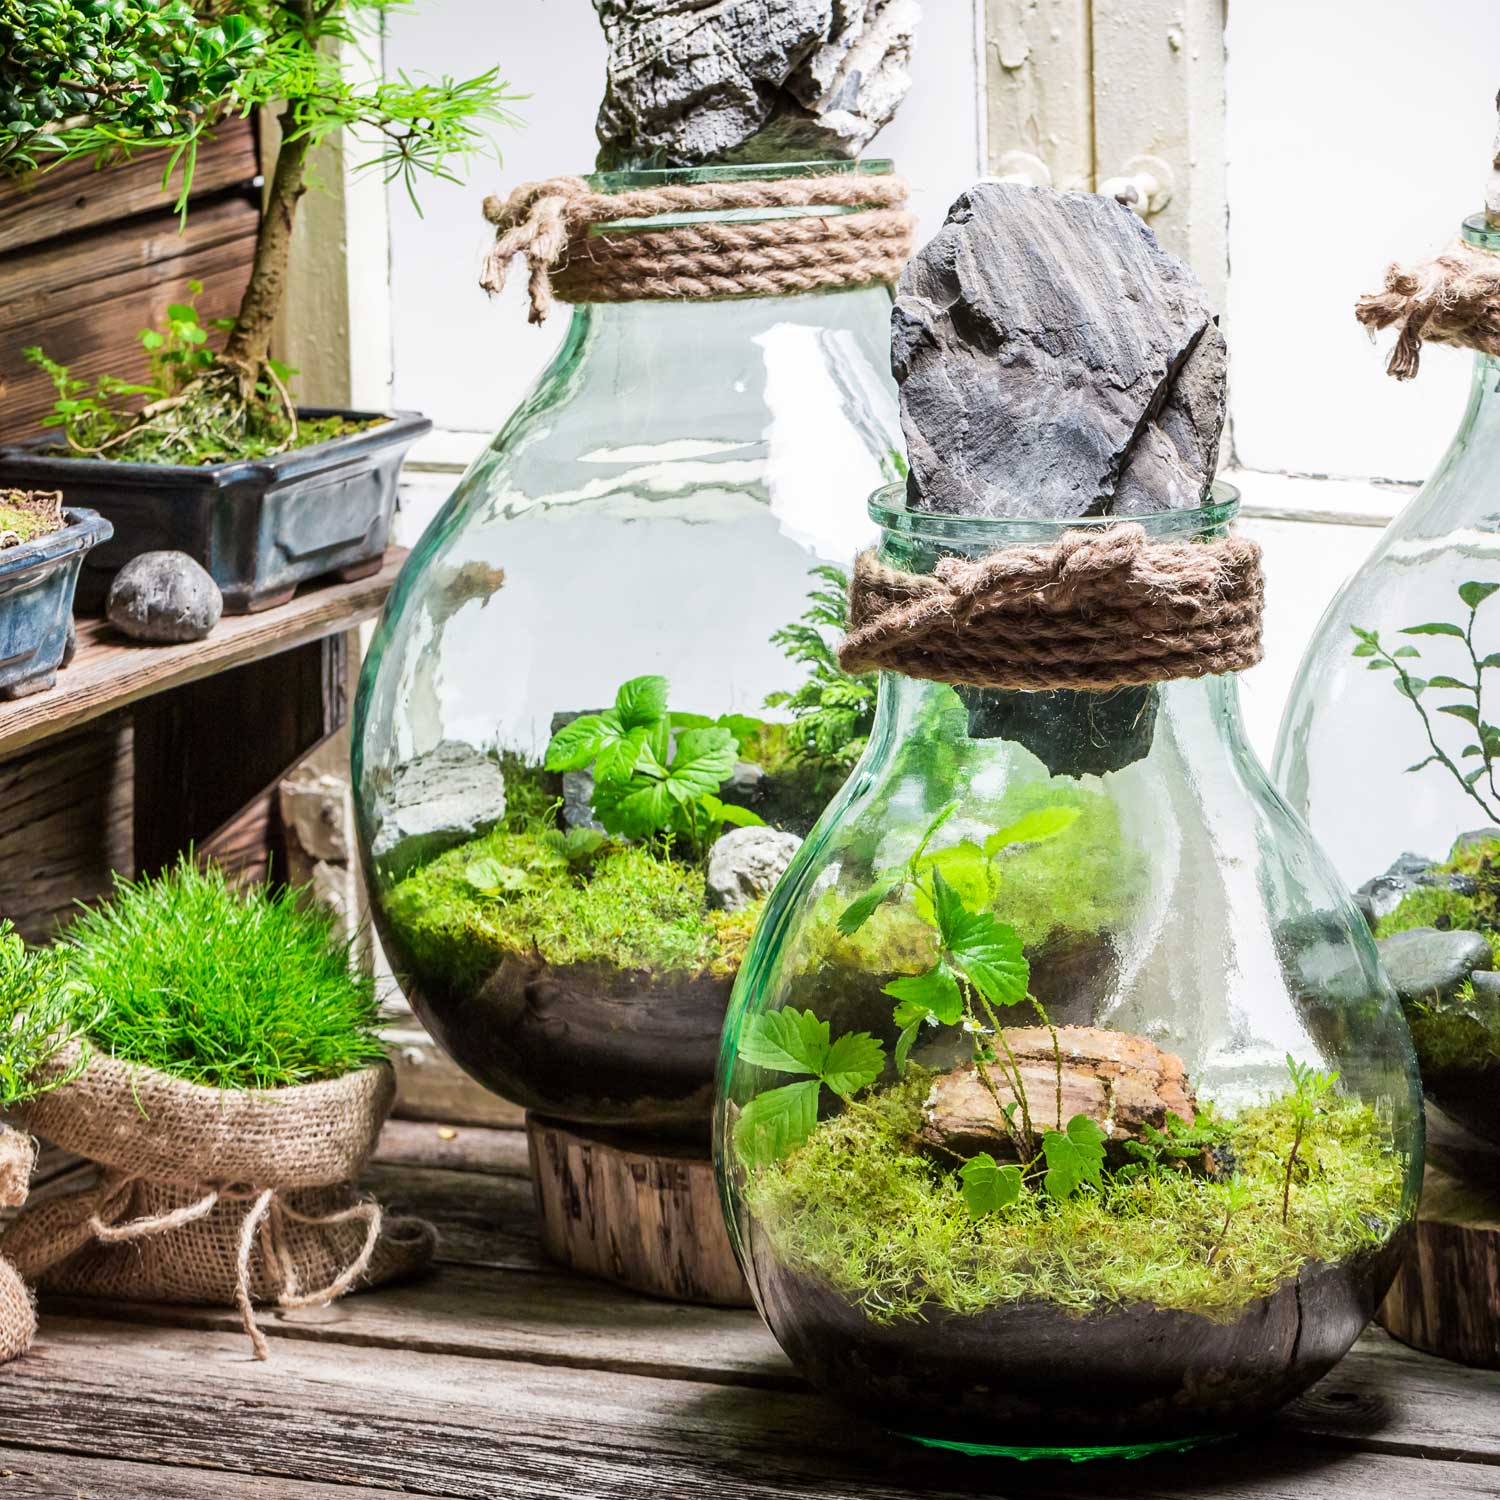 Terrarium, come creare piccoli giardini e paesaggi vegetali